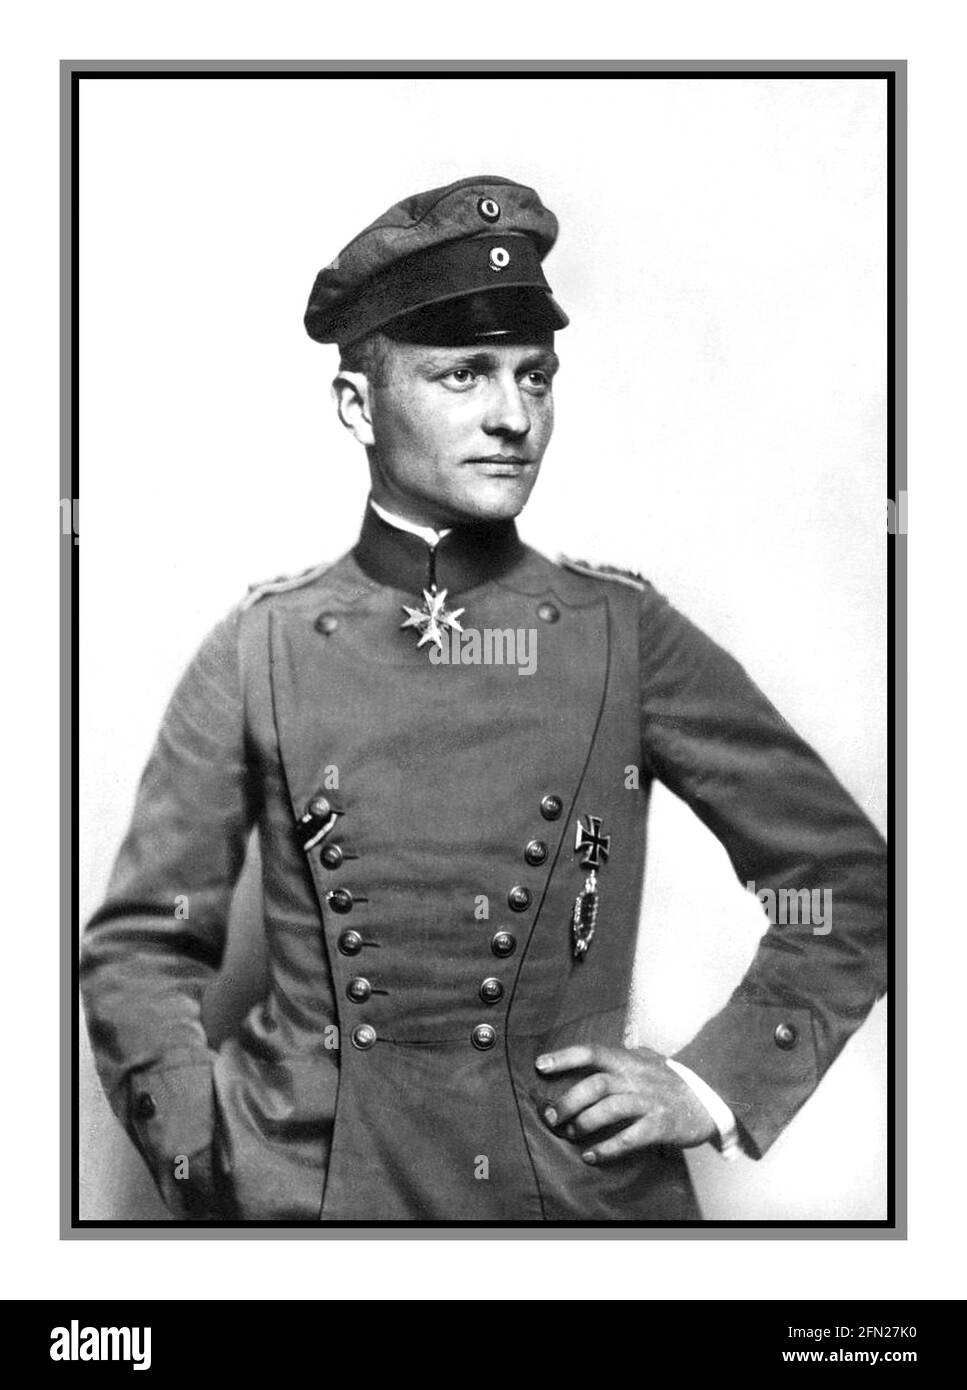 RED BARON WW1 Portrait c1917 von Manfred Albrecht Freiherr von Richthofen, englisch bekannt als Baron von Richthofen, Und vor allem als der "Rote Baron" bekannt, war während des Ersten Weltkriegs ein Kampfpilot bei der deutschen Luftwaffe. Er gilt als Ass des Krieges und wird offiziell mit 80 Luftkampfsiegen angerechnet. Richthofen trägt den Pour le Mérite, den 'Blauen Max', Preußens höchsten Militärbefehl, in diesem offiziellen Porträt, c.. 1917. Stockfoto